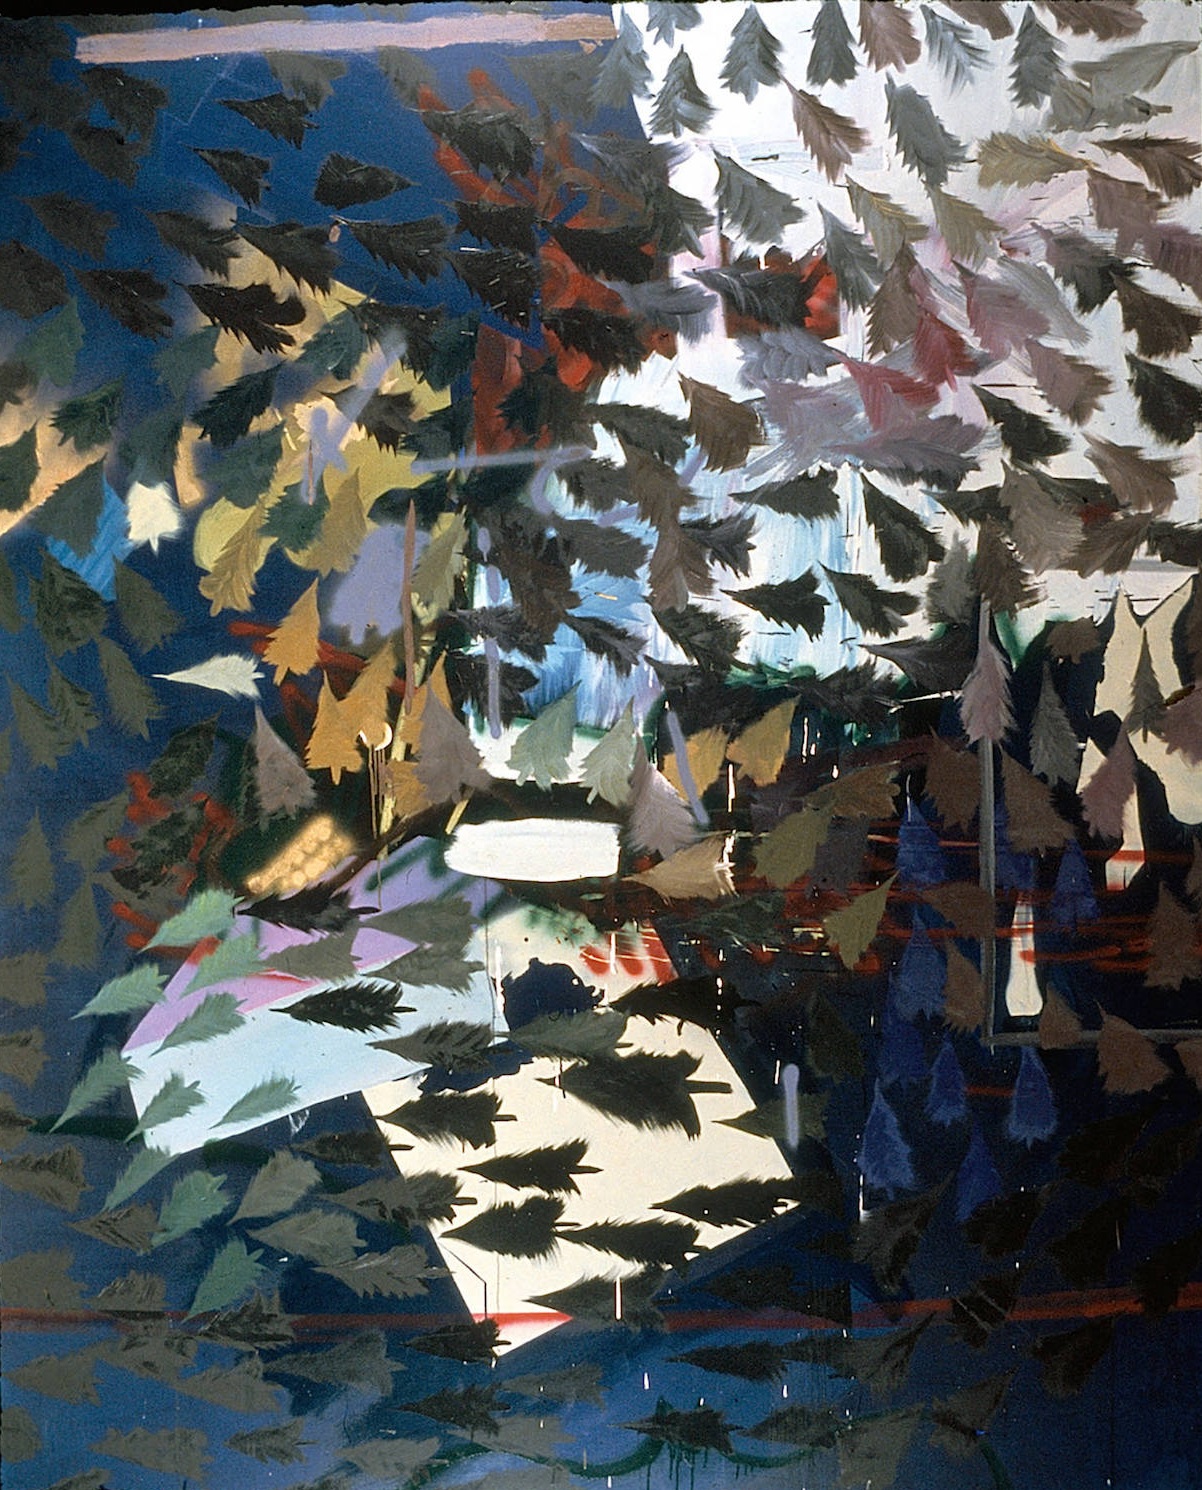   Alaska , 2001, acrylic paint, oil paint and spray enamel on canvas, 108 x 84 inches 